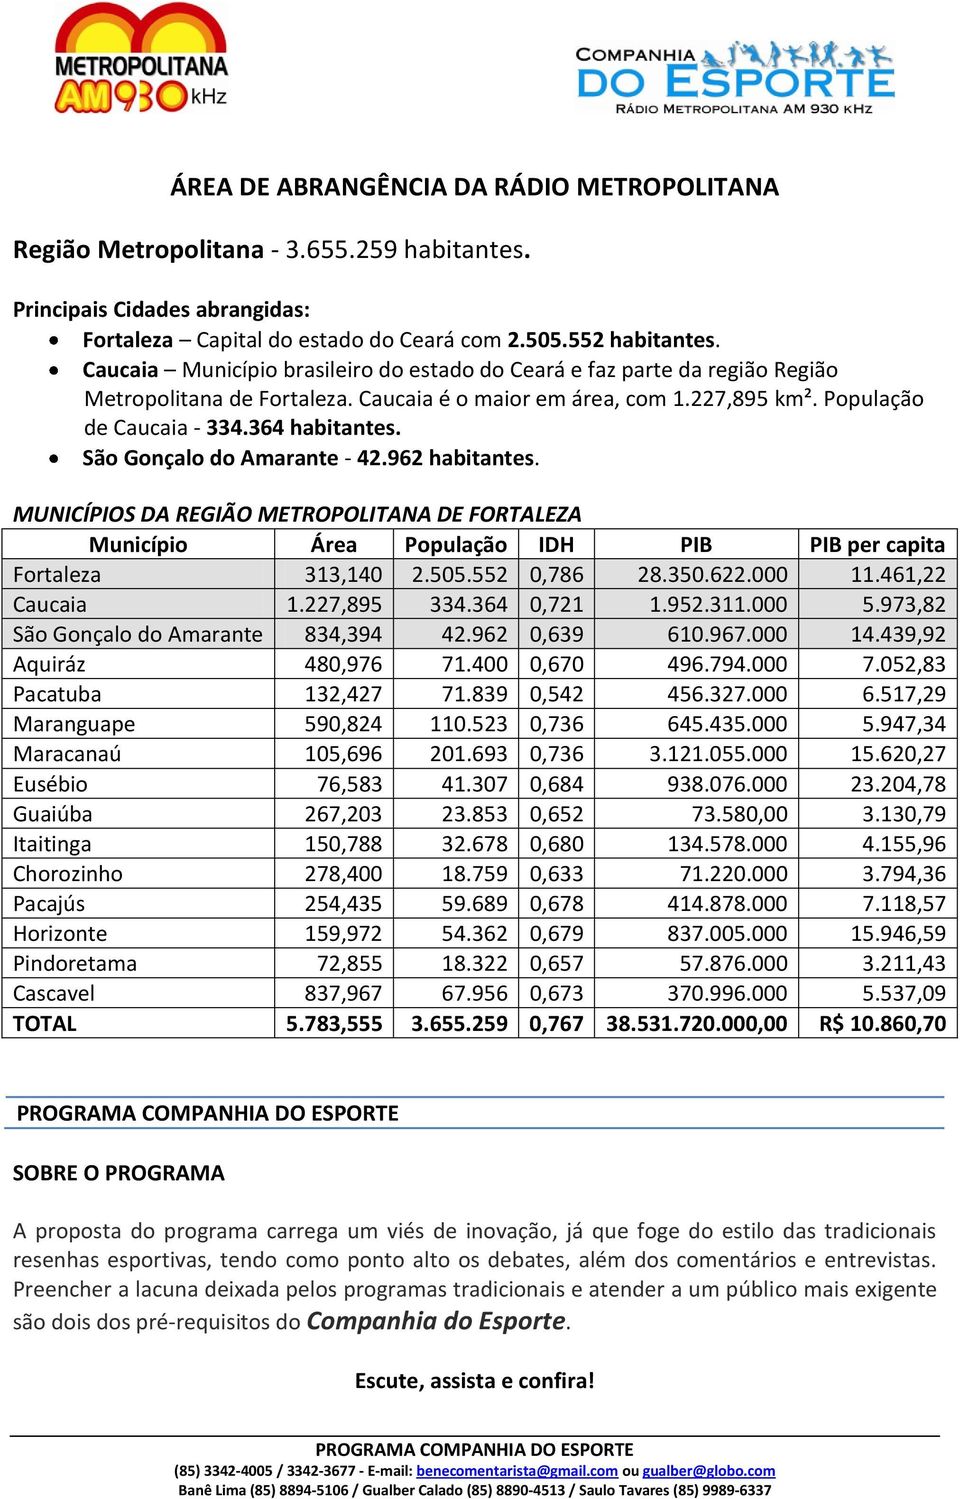 São Gonçalo do Amarante - 42.962 habitantes. MUNICÍPIOS DA REGIÃO METROPOLITANA DE FORTALEZA Município Área População IDH PIB PIB per capita Fortaleza 313,140 2.505.552 0,786 28.350.622.000 11.